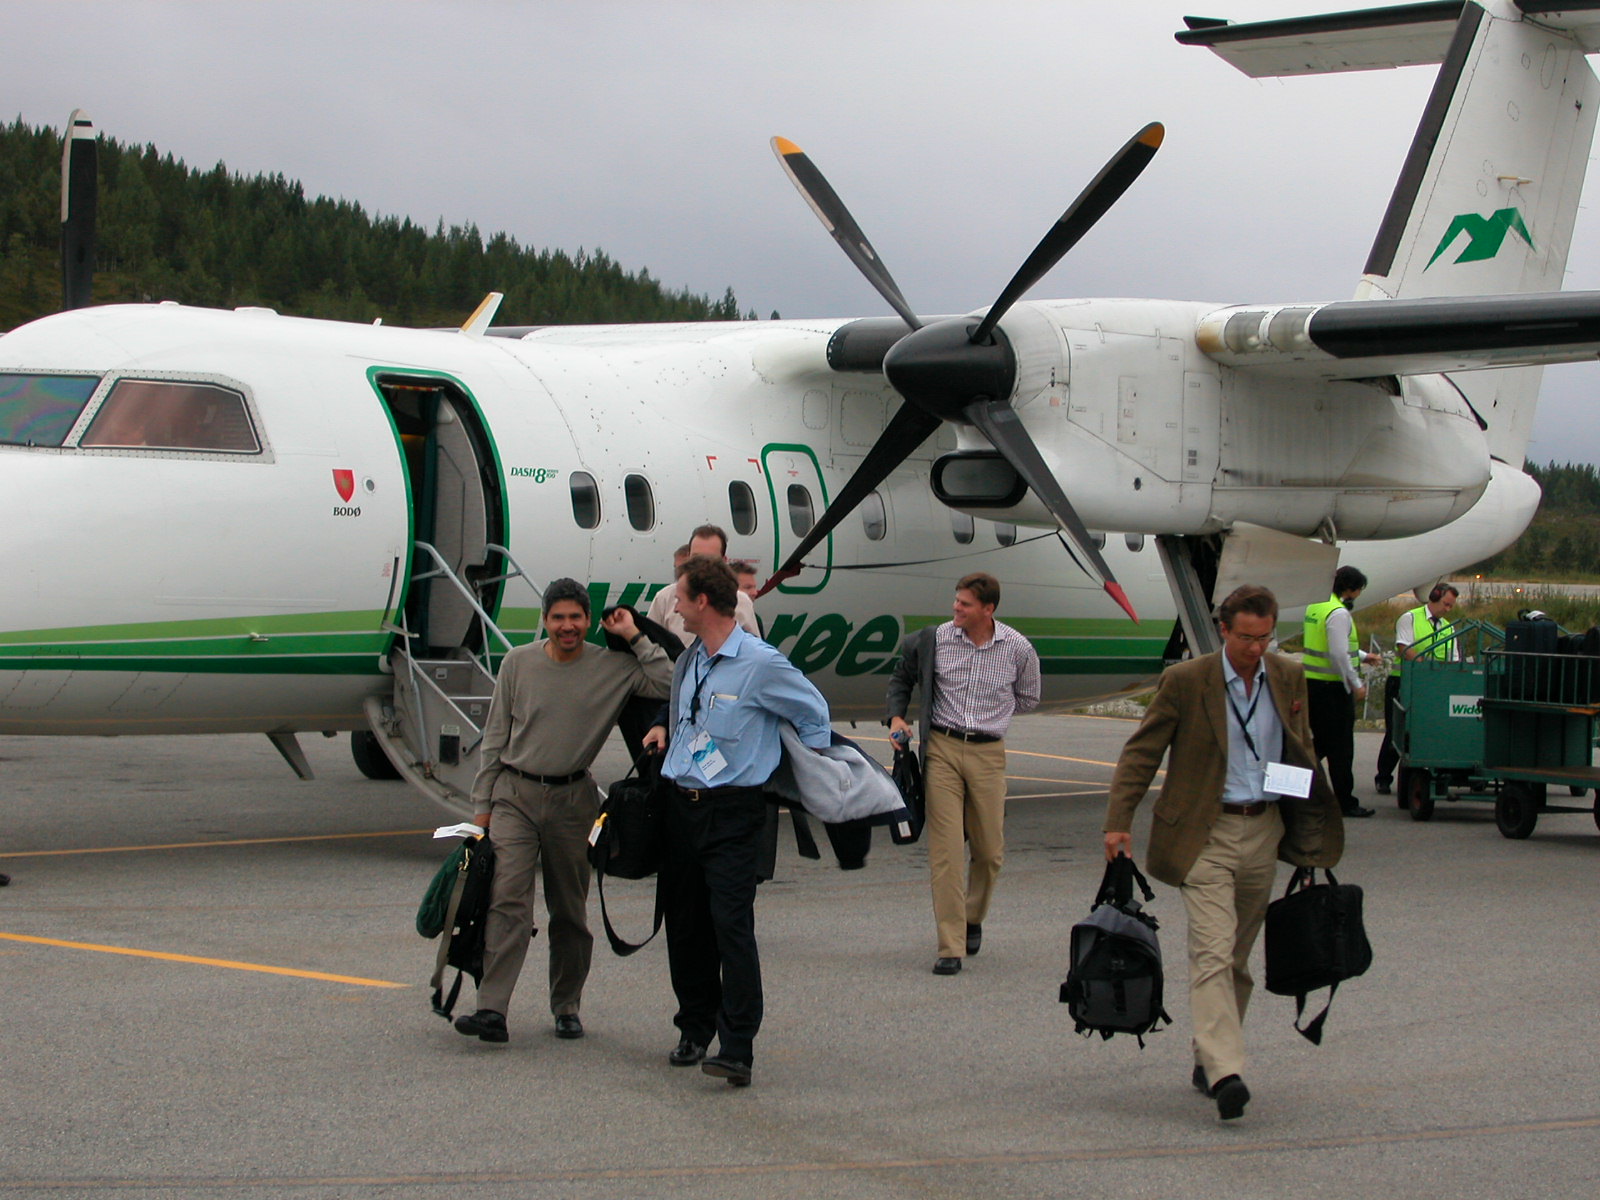 26 Plane transfer - arrival of one plane (Ross, Dag, Ferdinand)